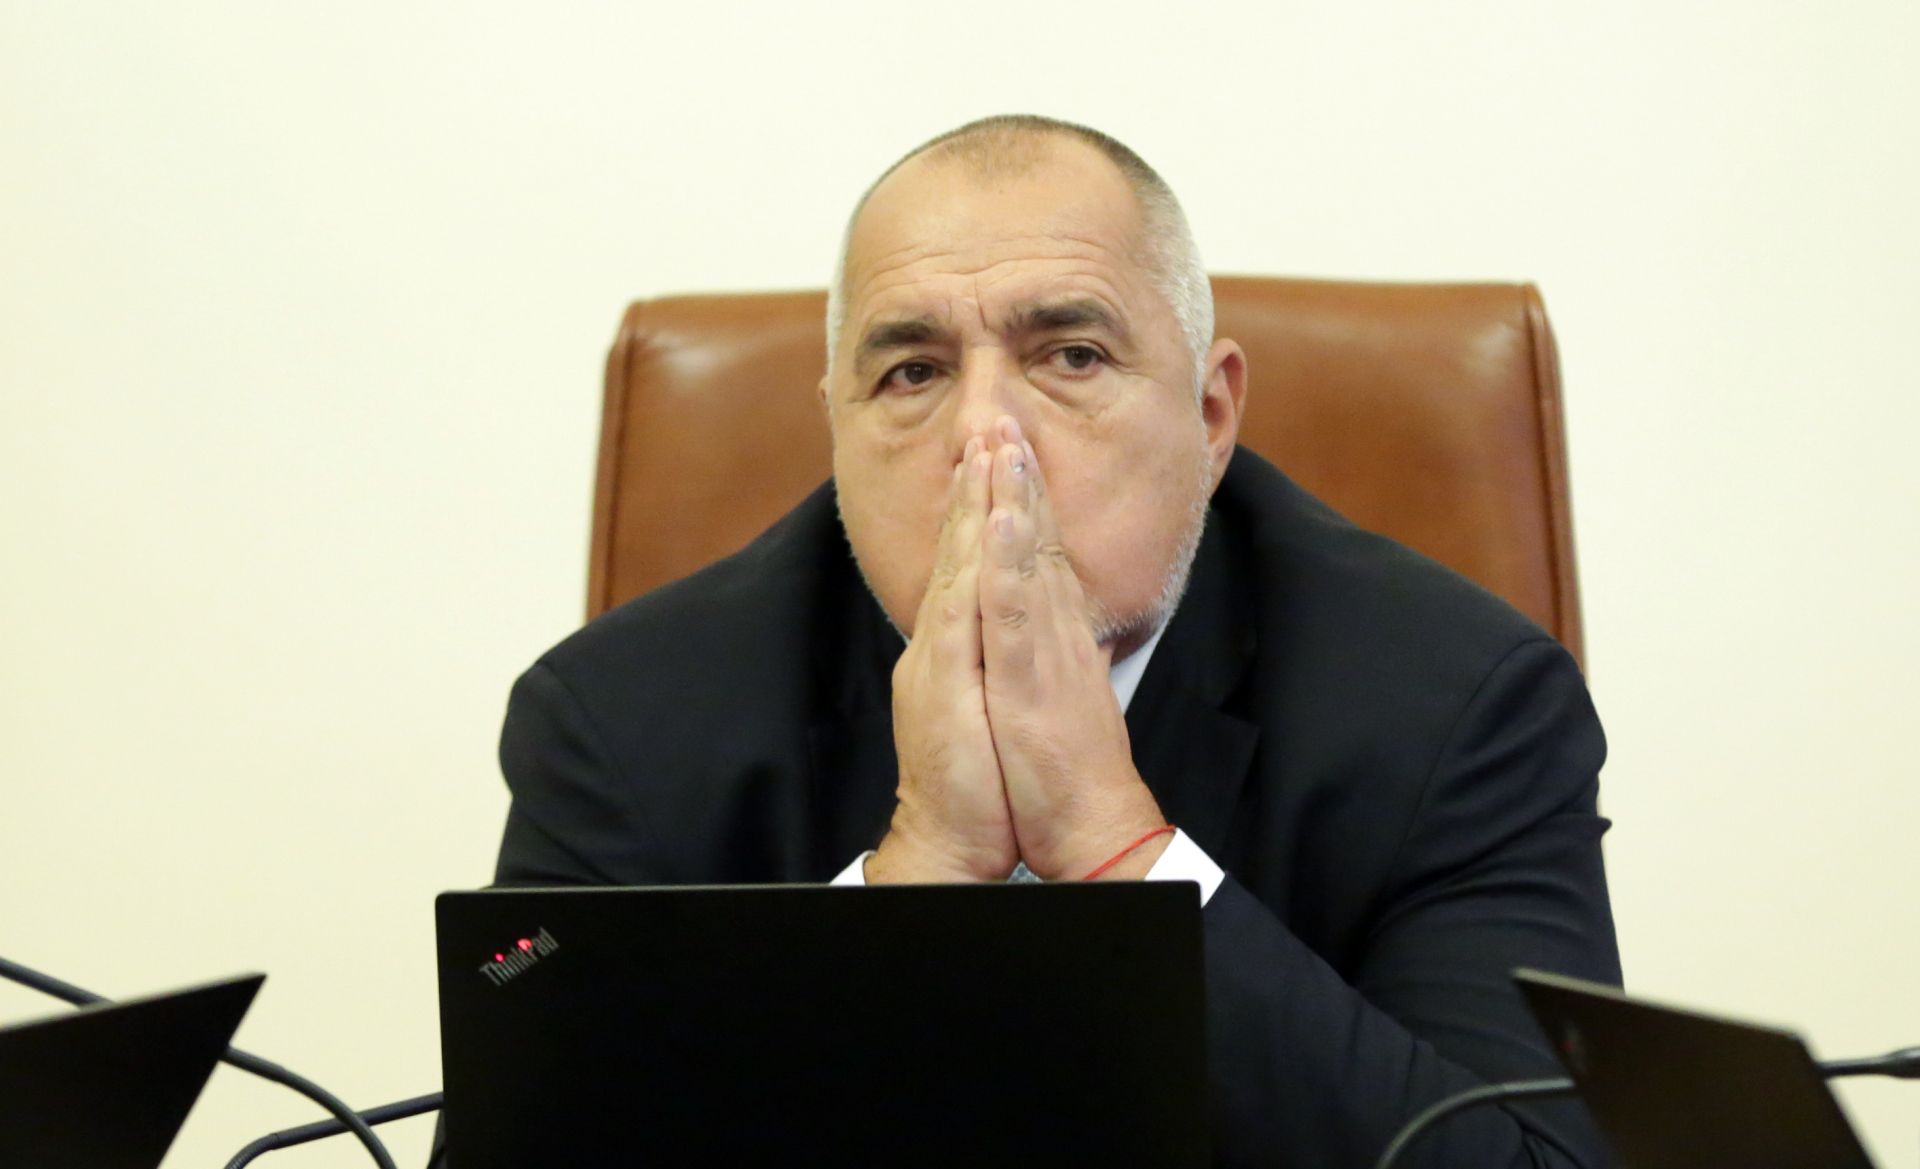 "Правителството положи всички усилия и предприе необходимите действия за решаване на проблемите и предизвикателствата", заявява Борисов